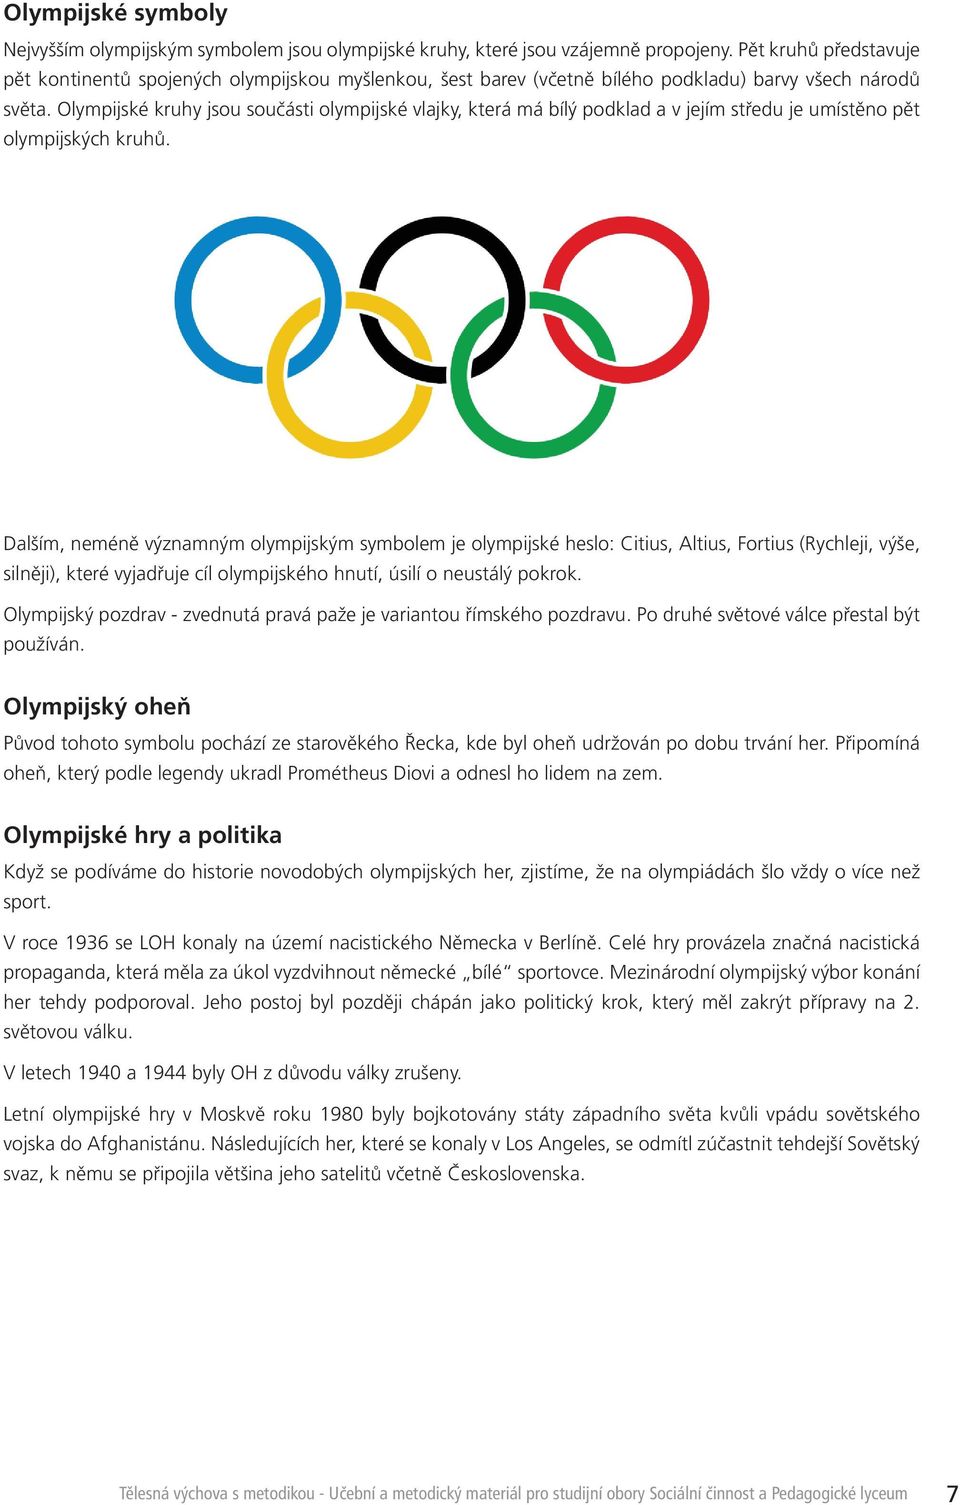 Olympijské kruhy jsou součásti olympijské vlajky, která má bílý podklad a v jejím středu je umístěno pět olympijských kruhů.